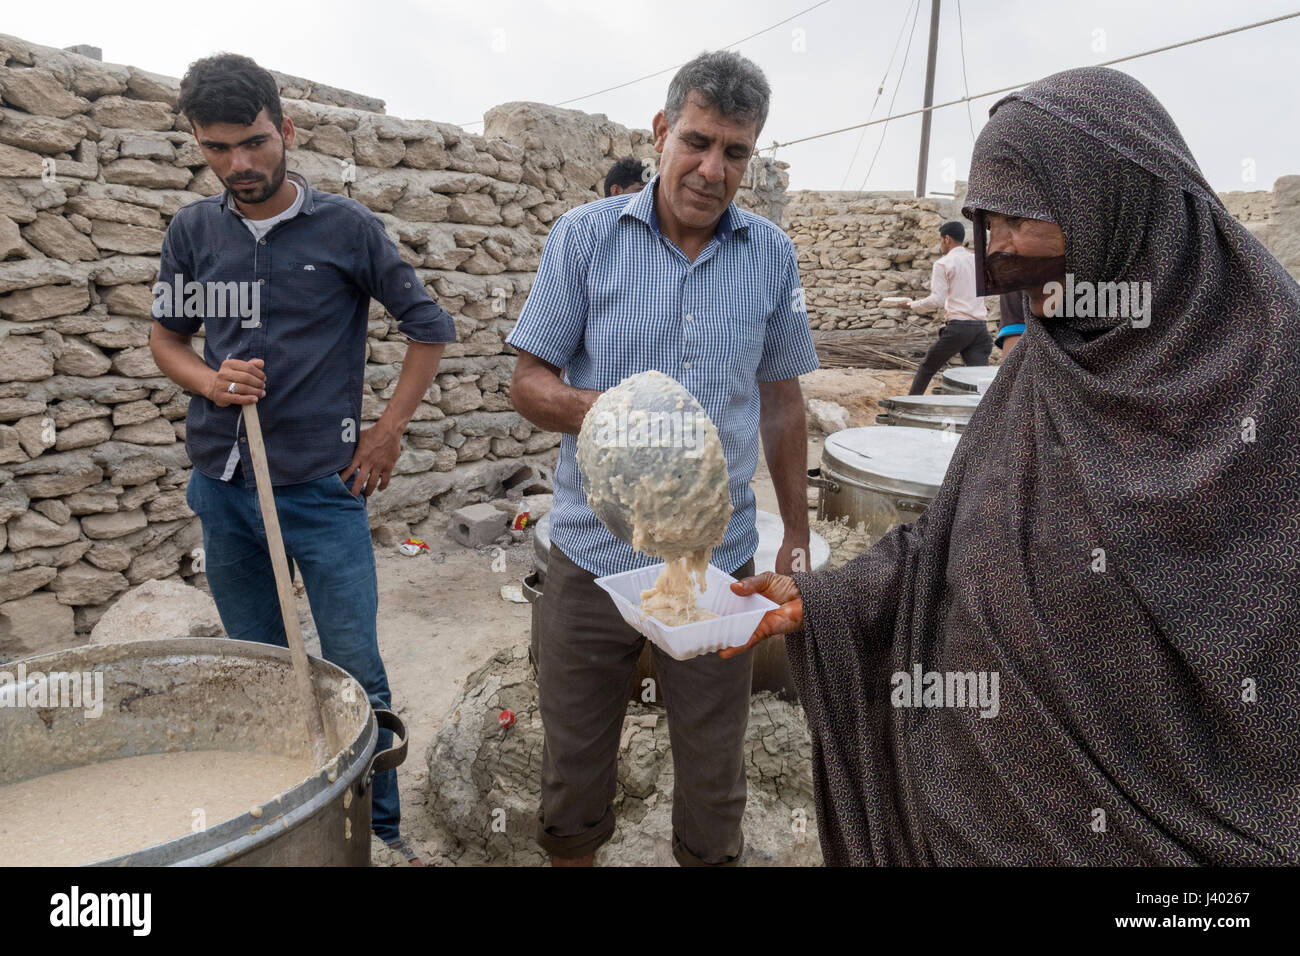 Hommes servant Halim -porridge local- à une dame dans un récipient en plastique, mariage traditionnel, l'île de Qeshm, Tabl, Province Hormozgan, IRAN Banque D'Images